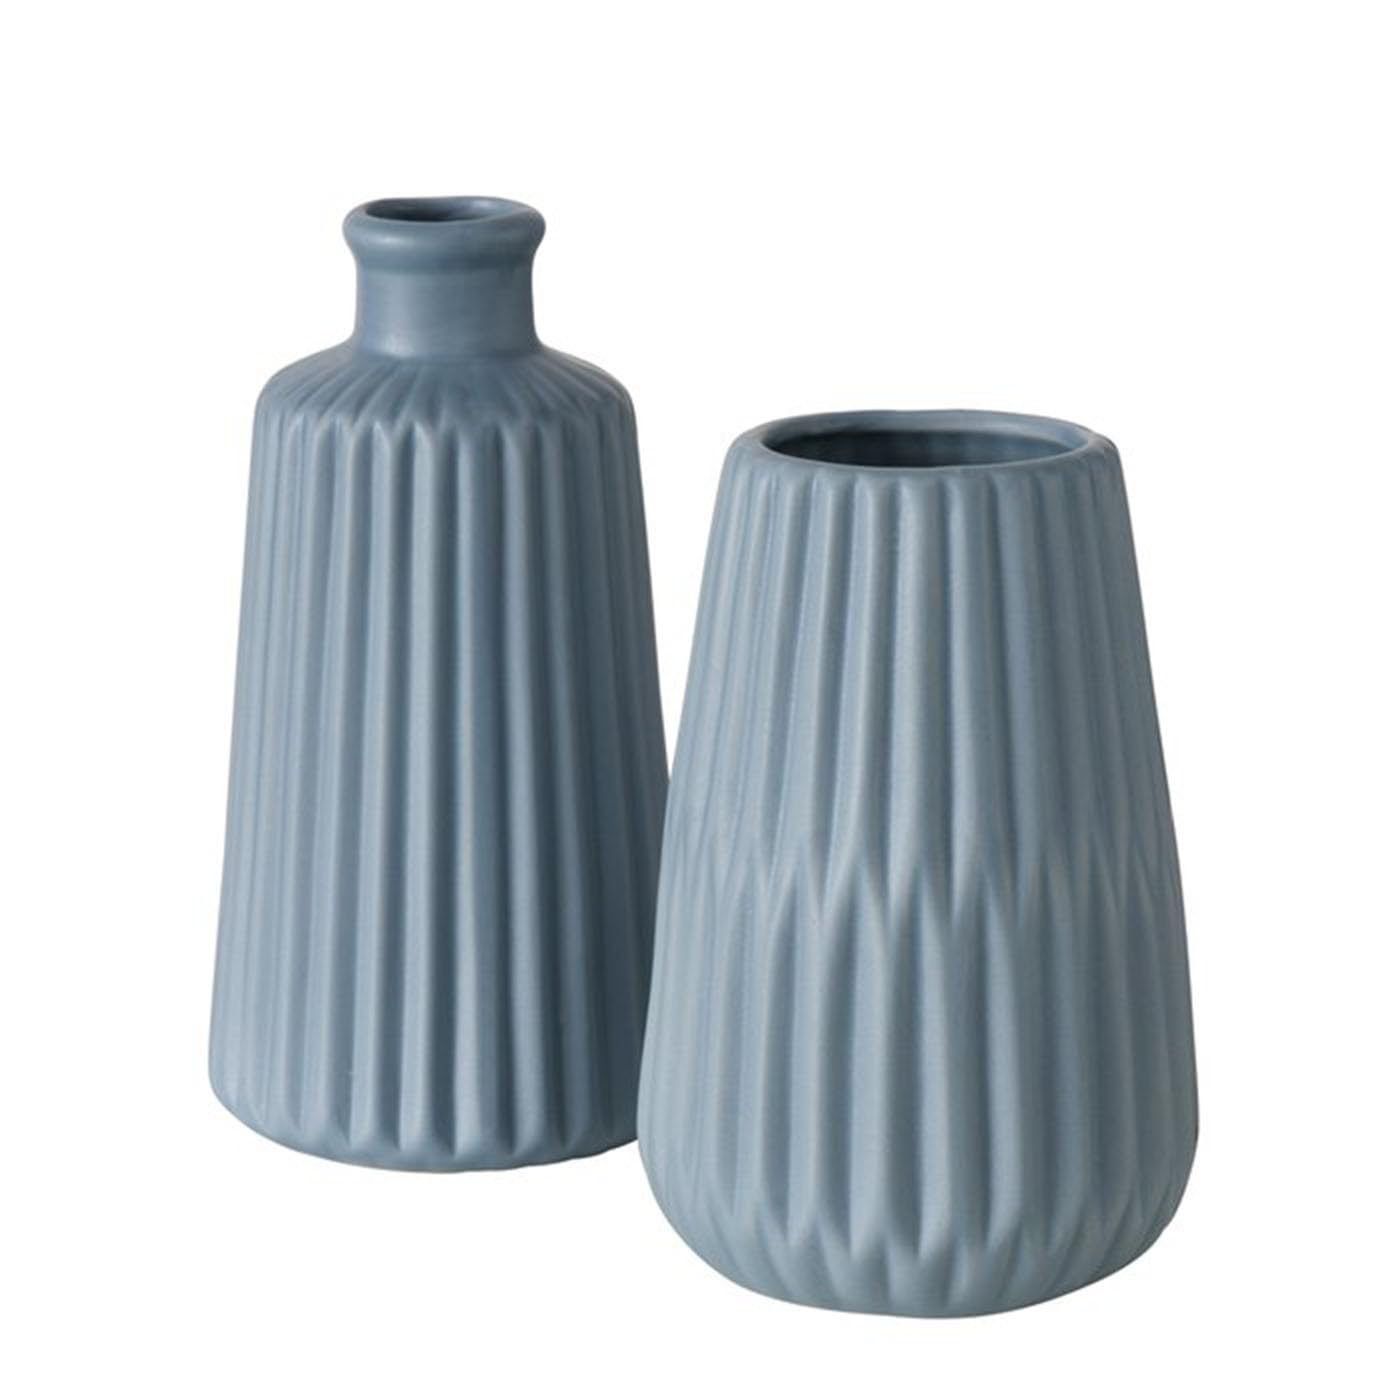 Deko Vase im 2er Set aus Keramik Mattes Design mit Rillen Höhe 18 cm Blumenvase Tischdekoration - Blau